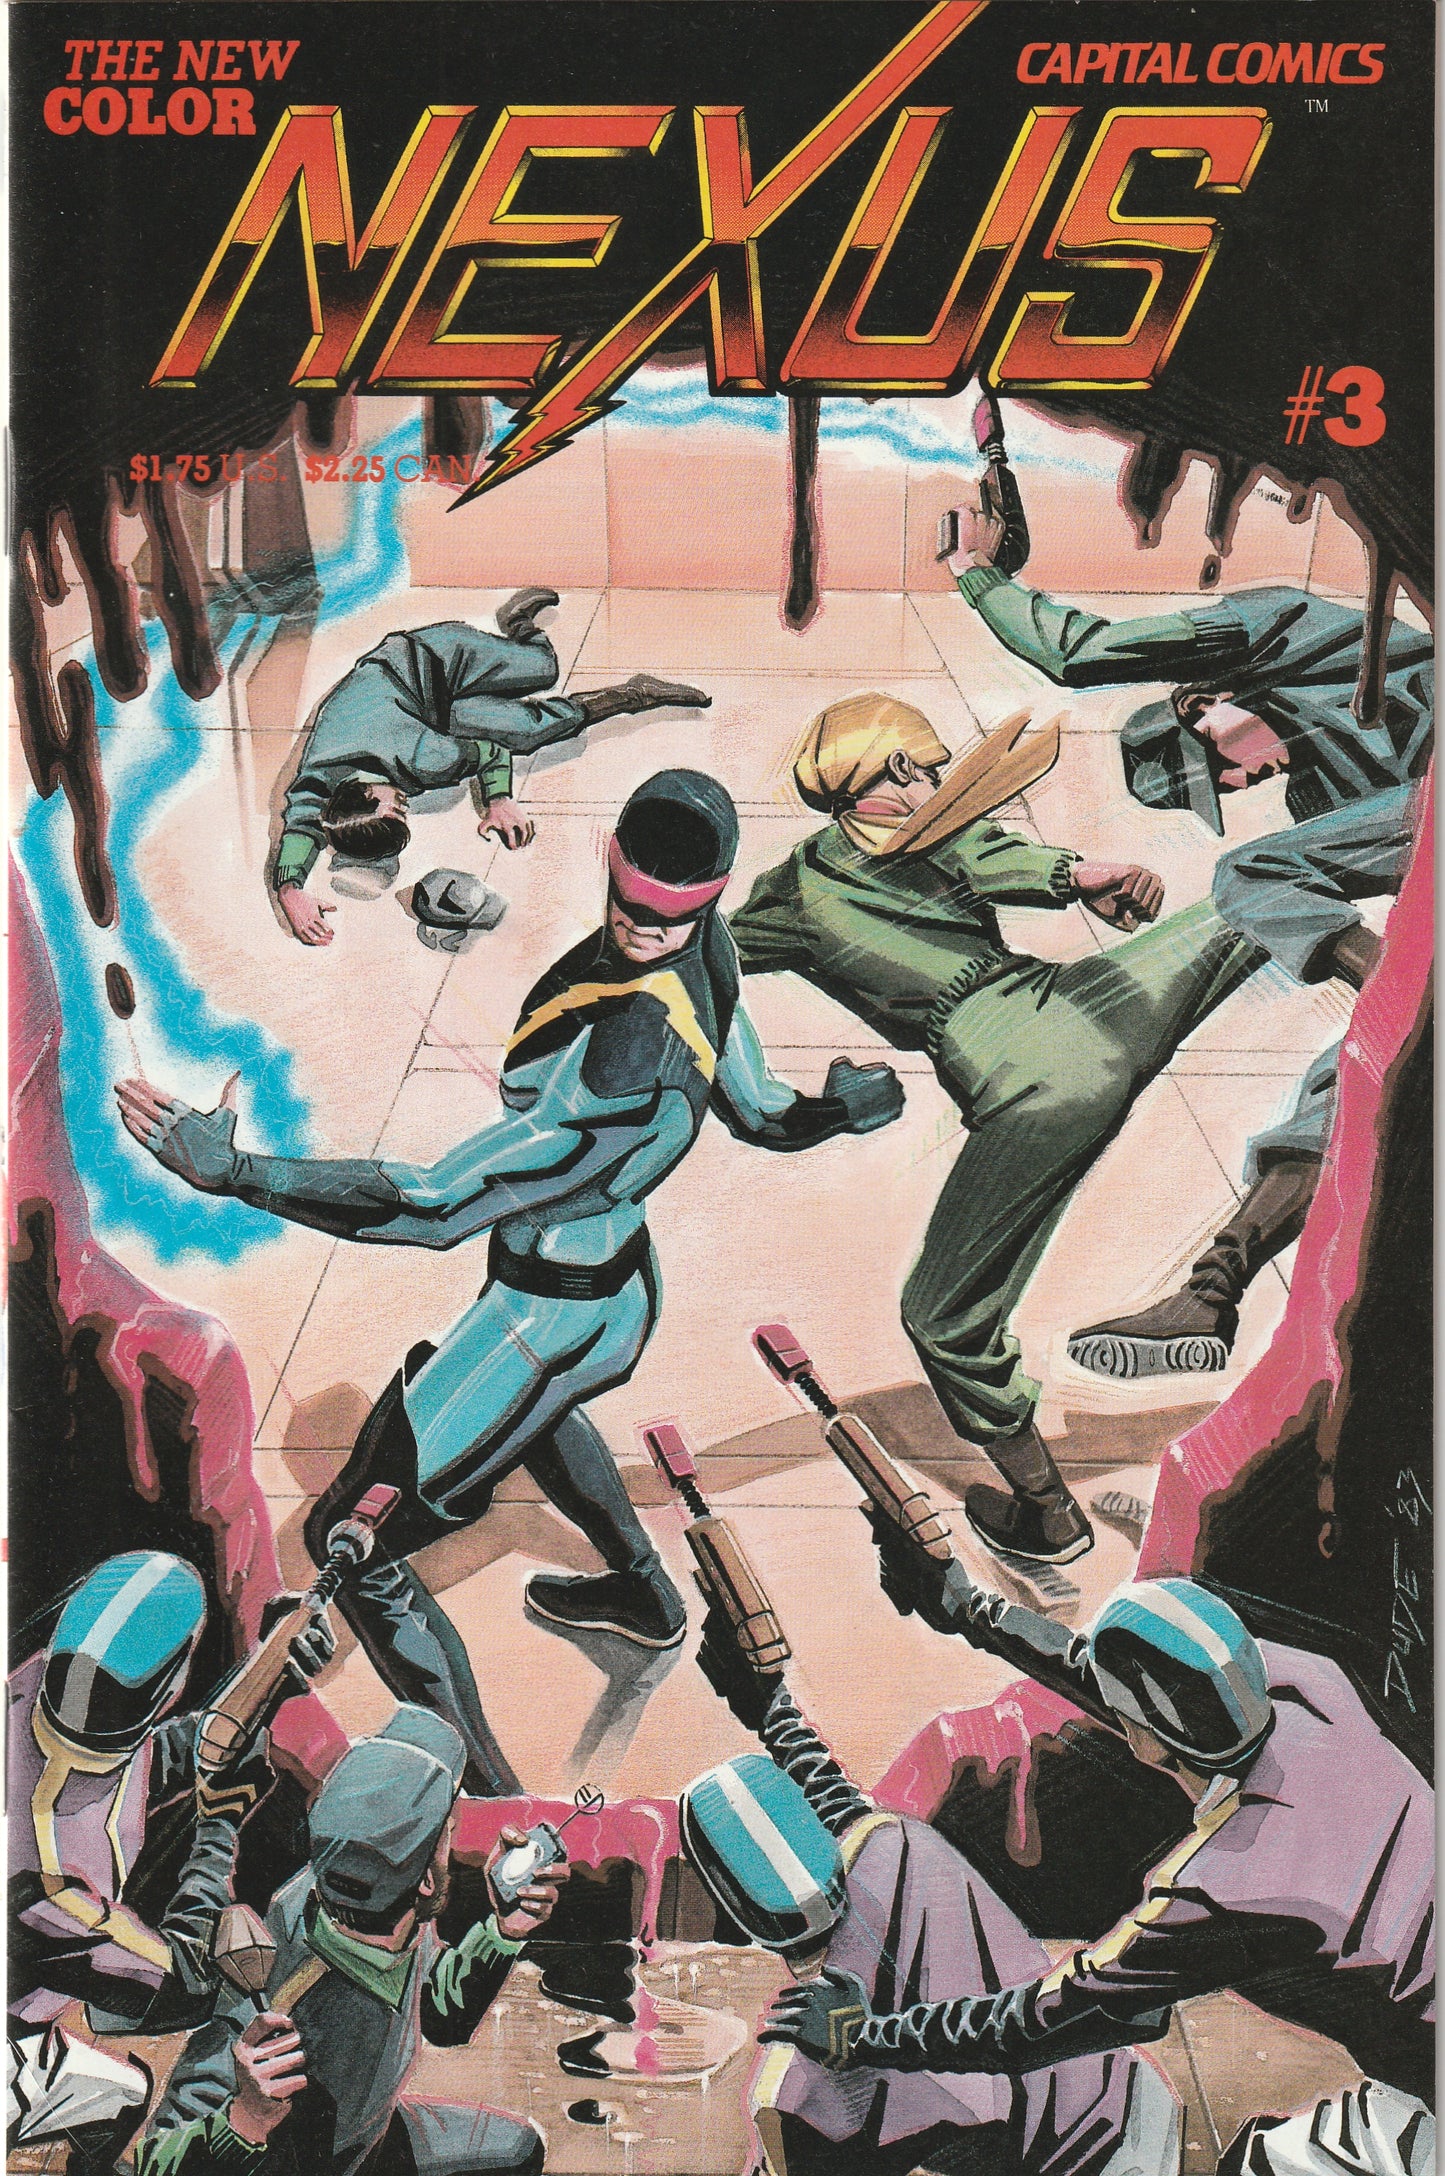 NEXUS #3 (Vol 2, 1983) - In Colour!